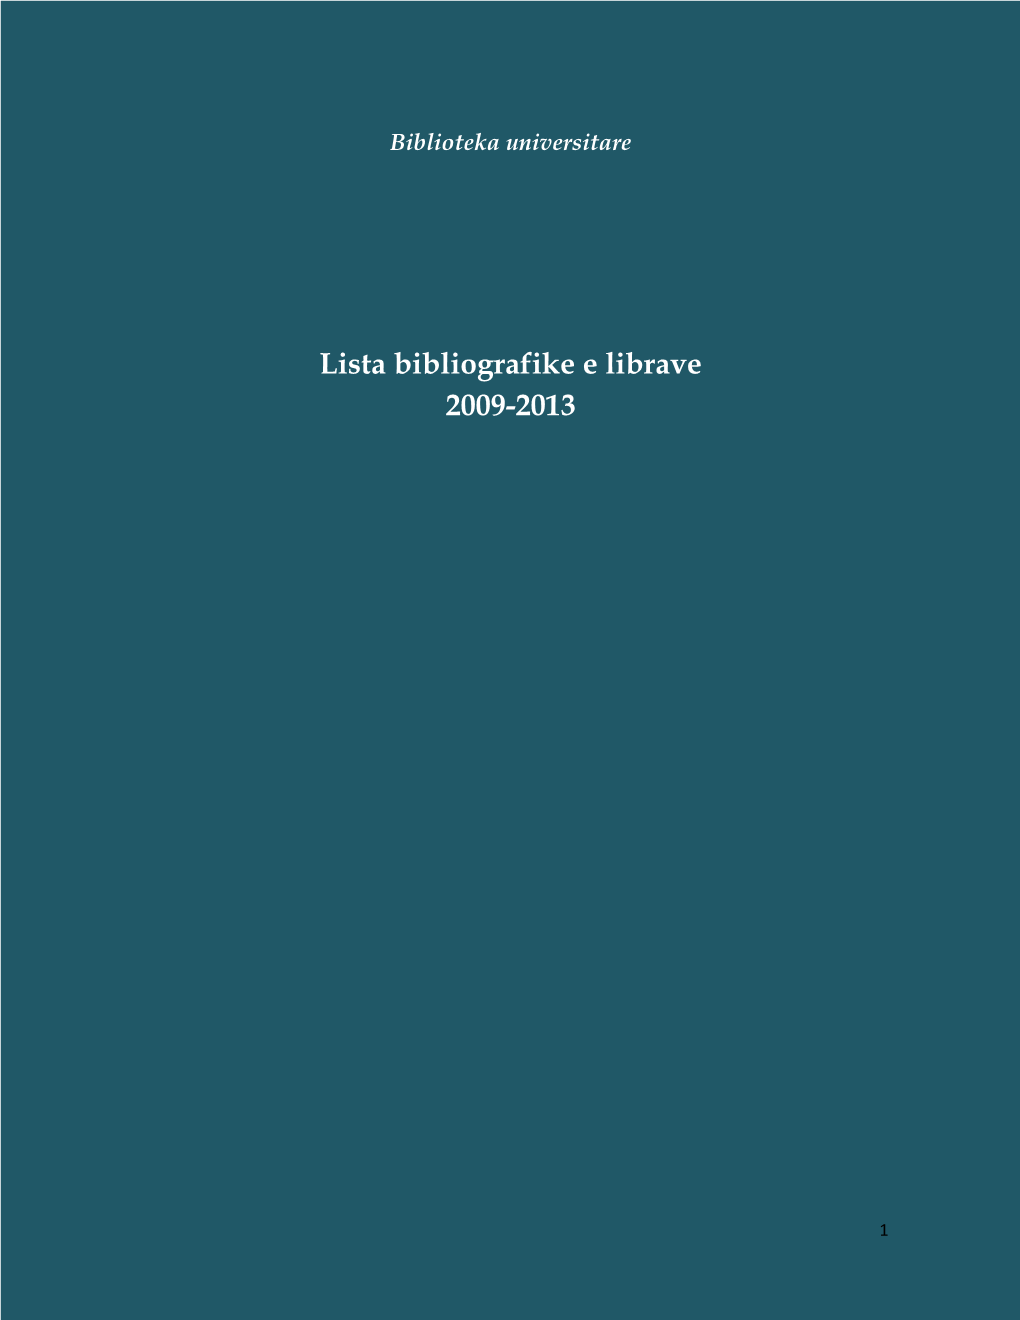 Lista Bibliografike E Librave 2009-2013